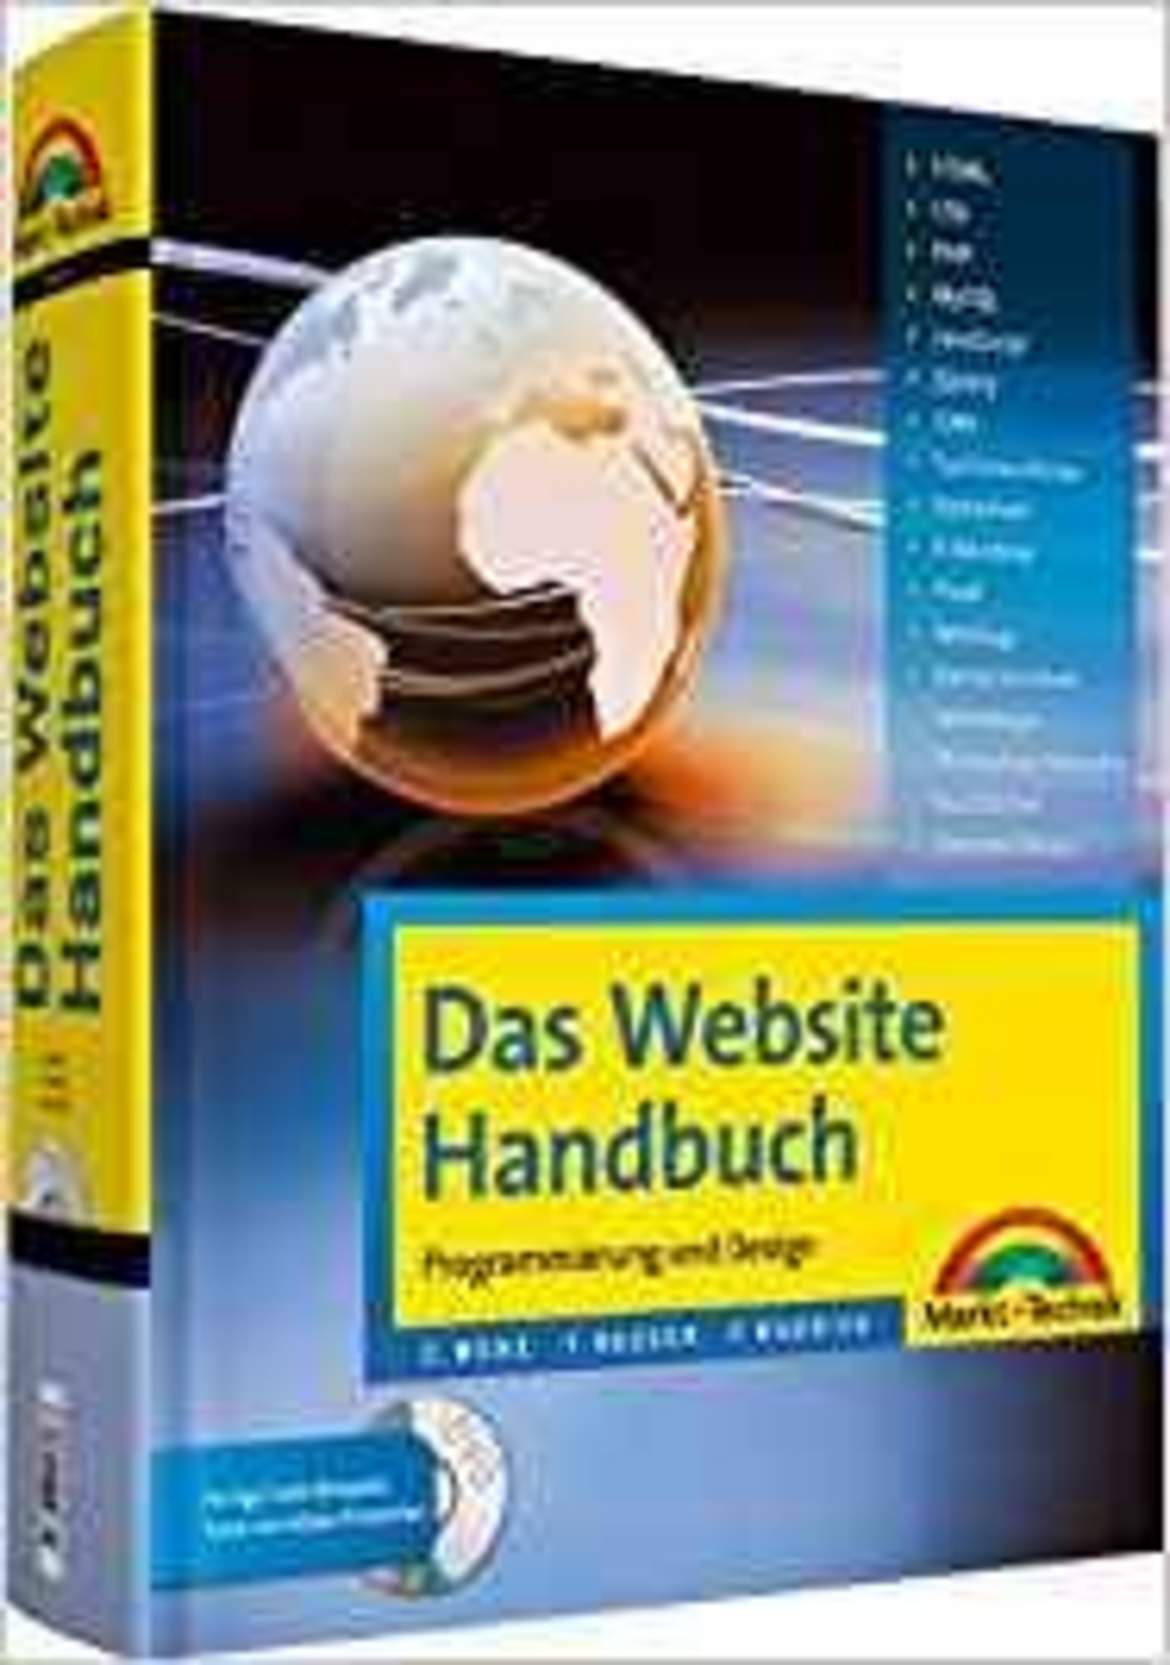 Das Website Handbuch. Programmierung und Design